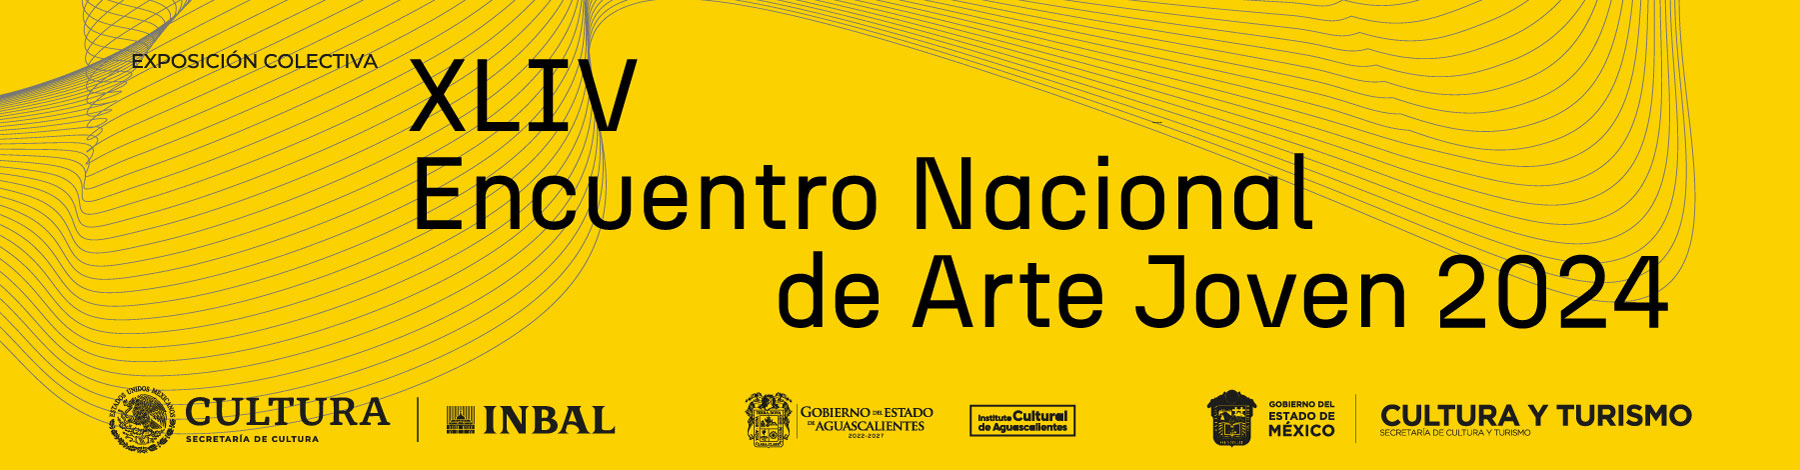 Encuentro Nacional de Arte Joven 2024